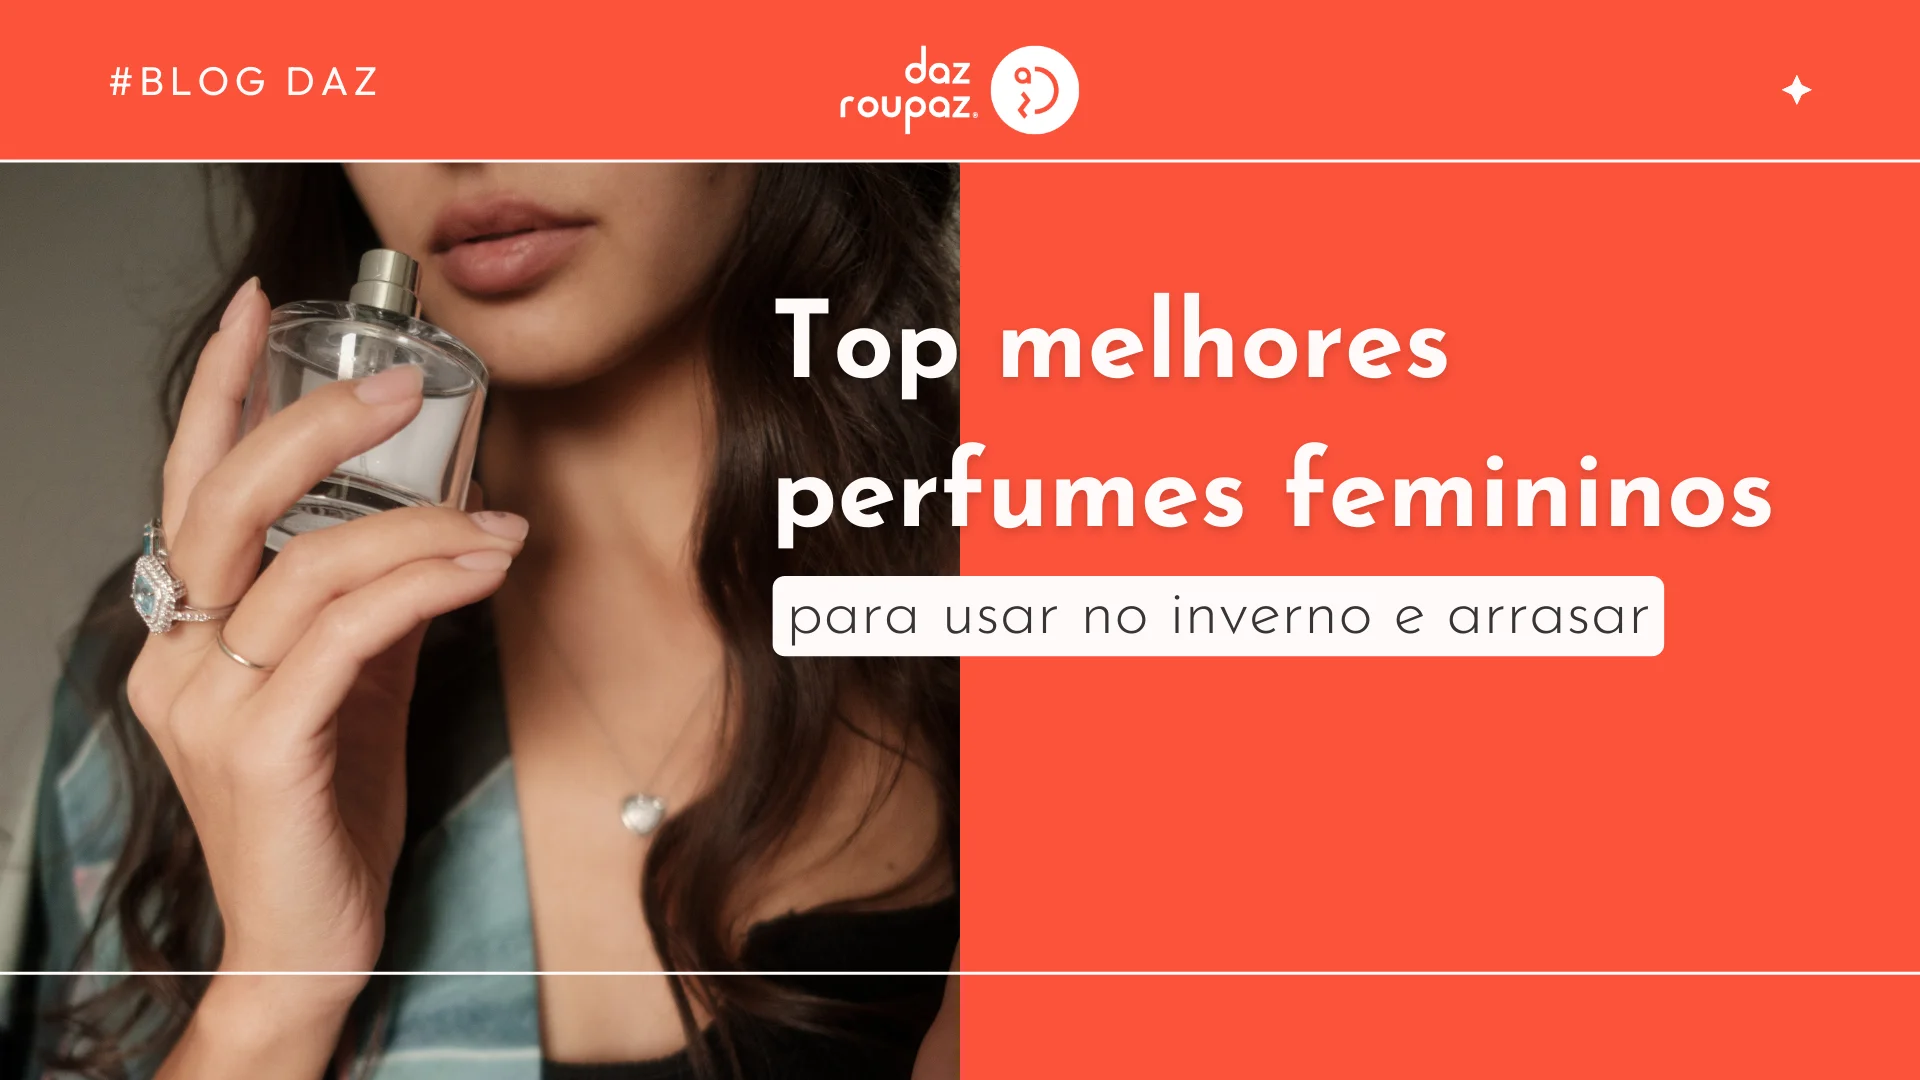 Descubra os top 6 melhores perfumes femininos para usar no inverno e arrasar com essas fragrâncias irresistíveis. Saiba mais no nosso blog!